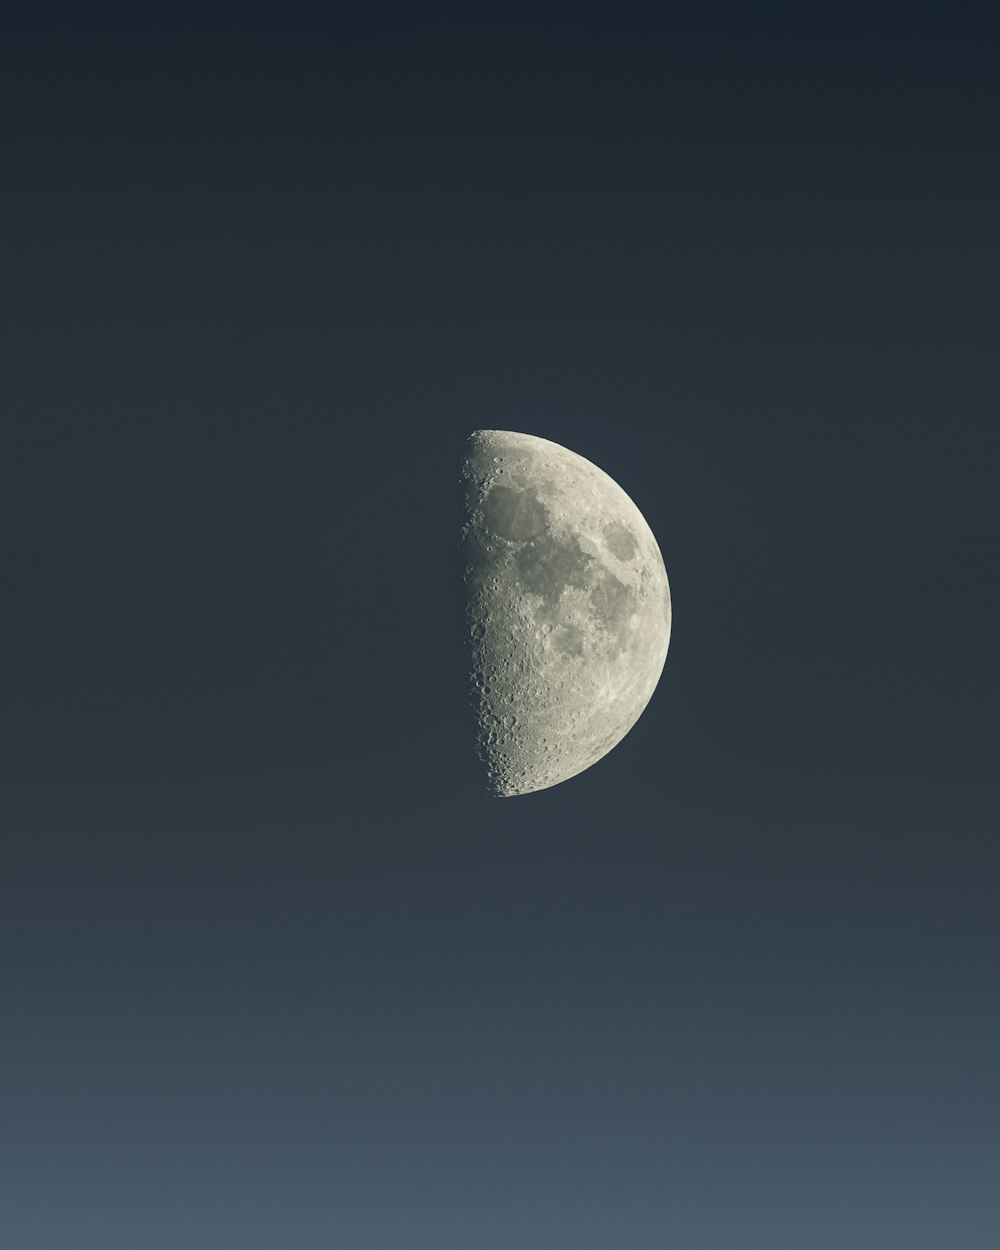 Se ve una media luna en el cielo